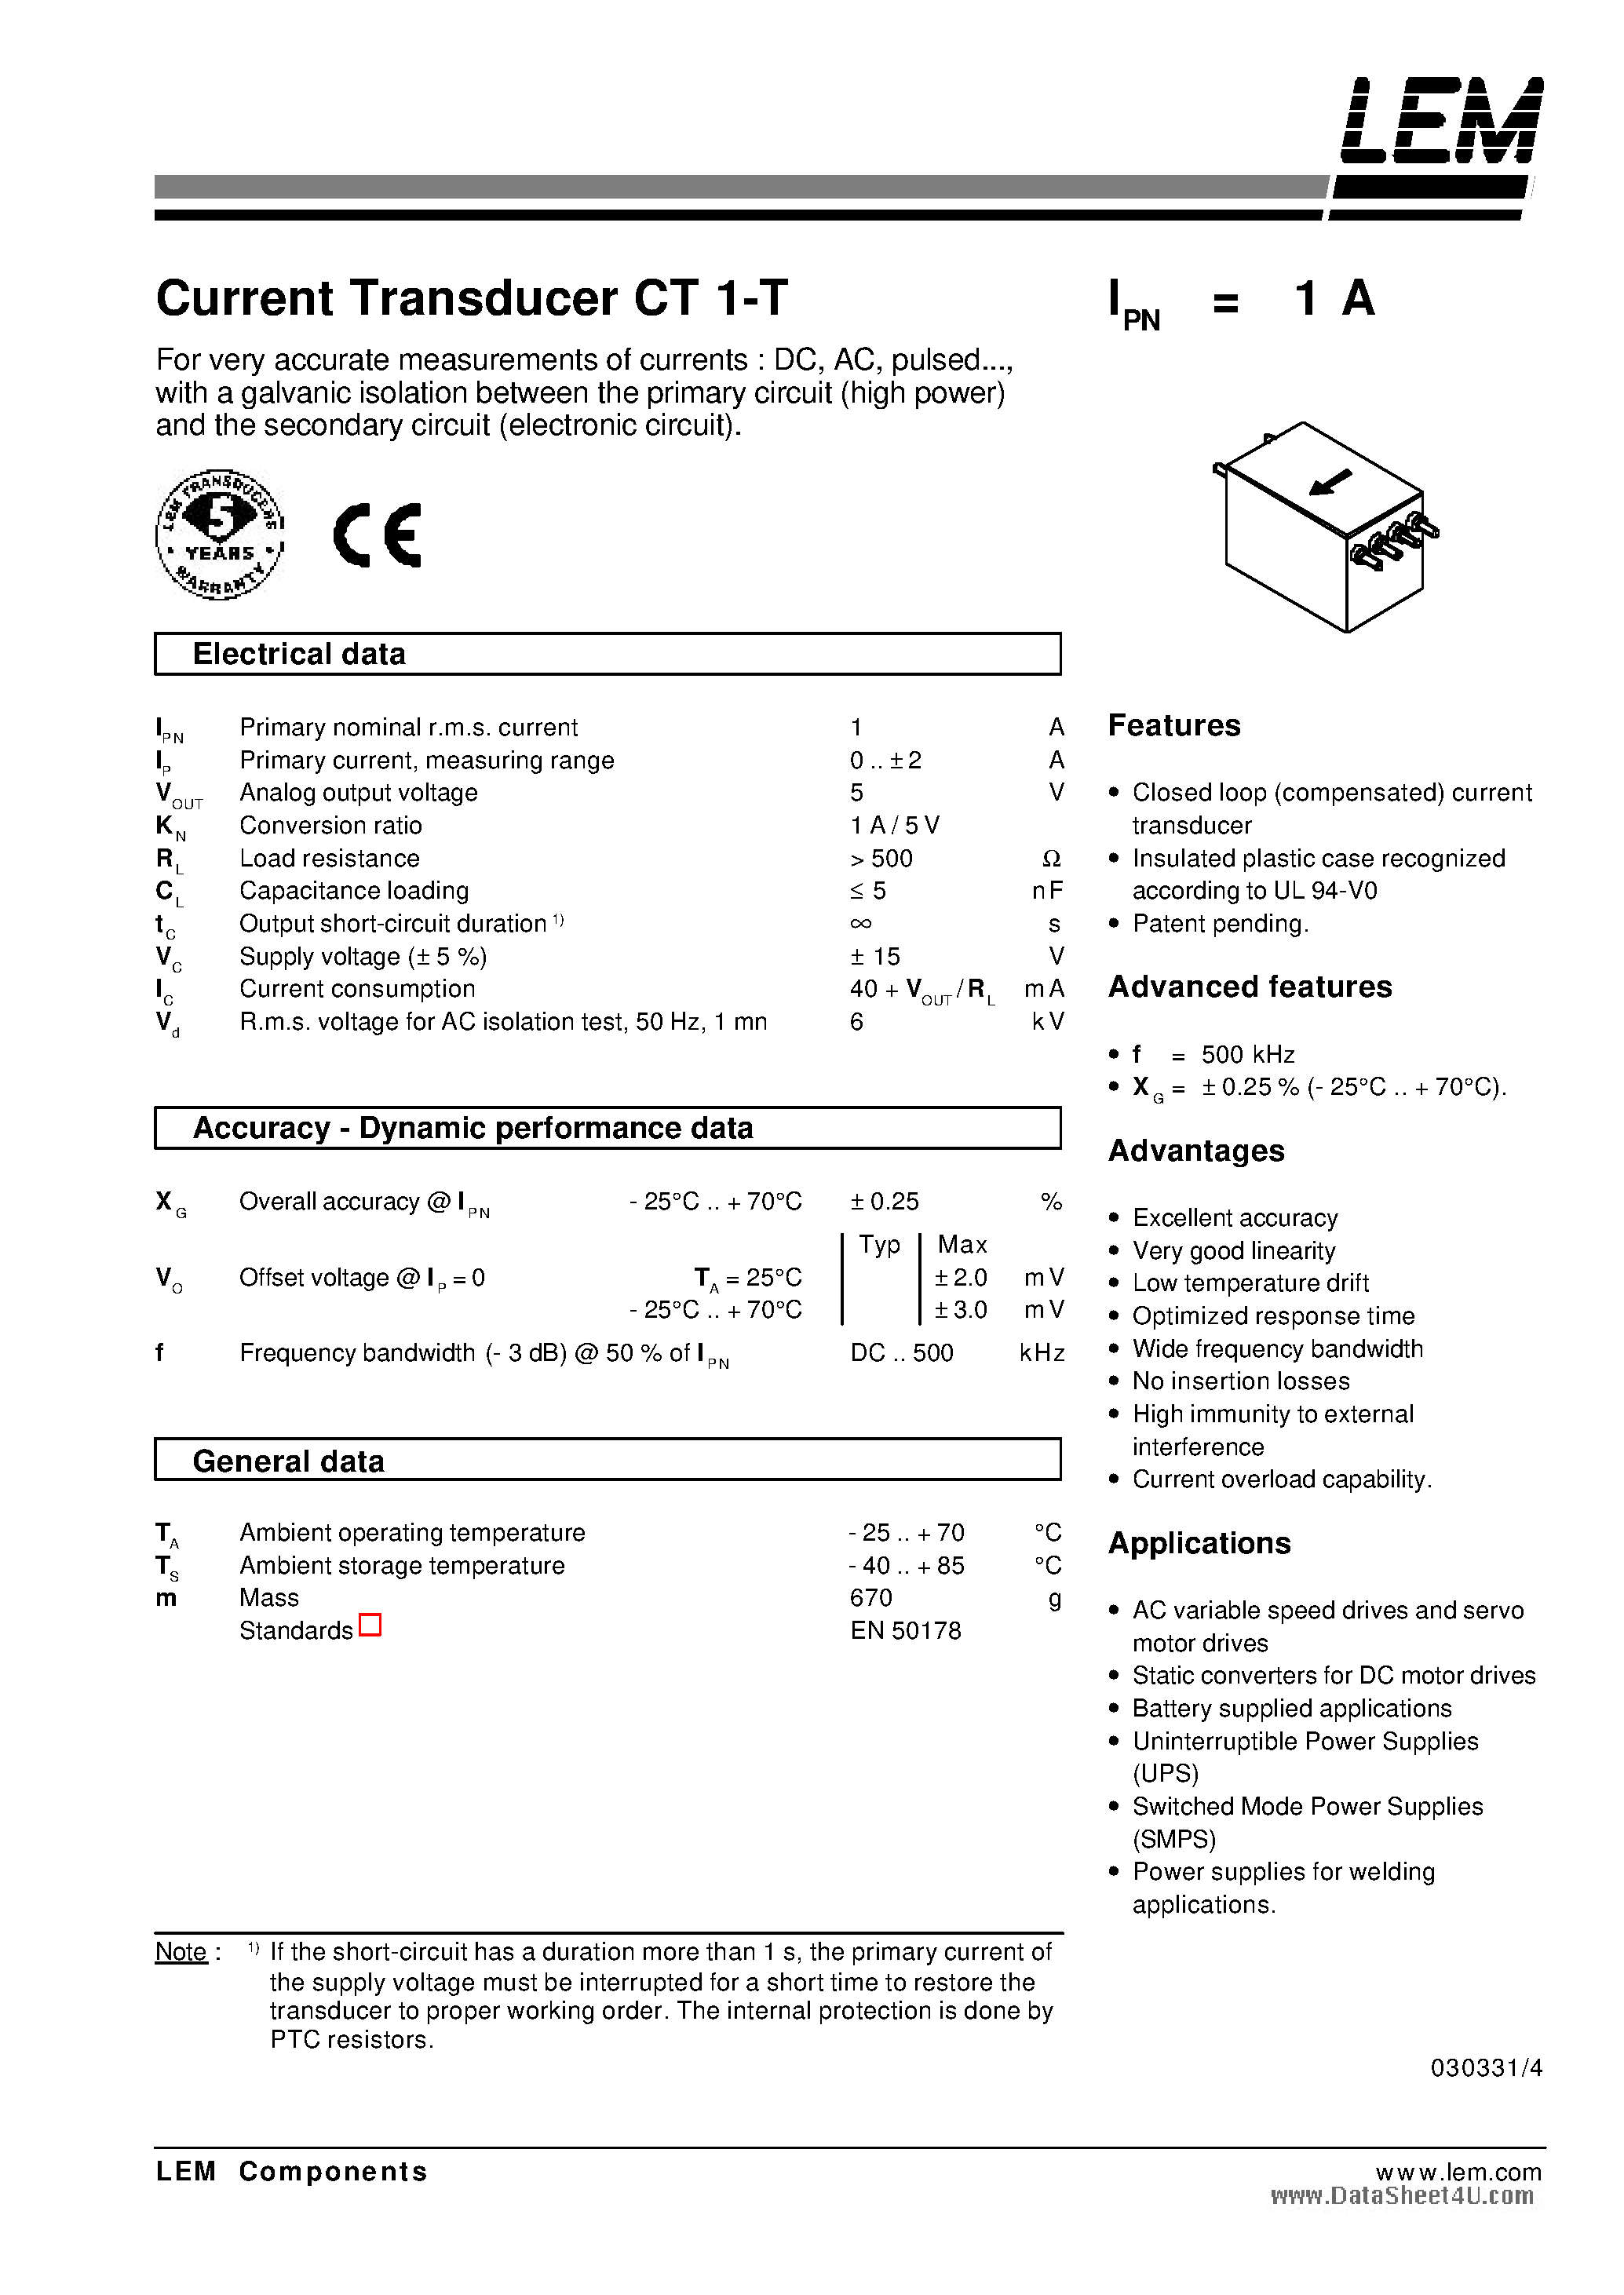 Даташит CT1-T - Current Transducer страница 1